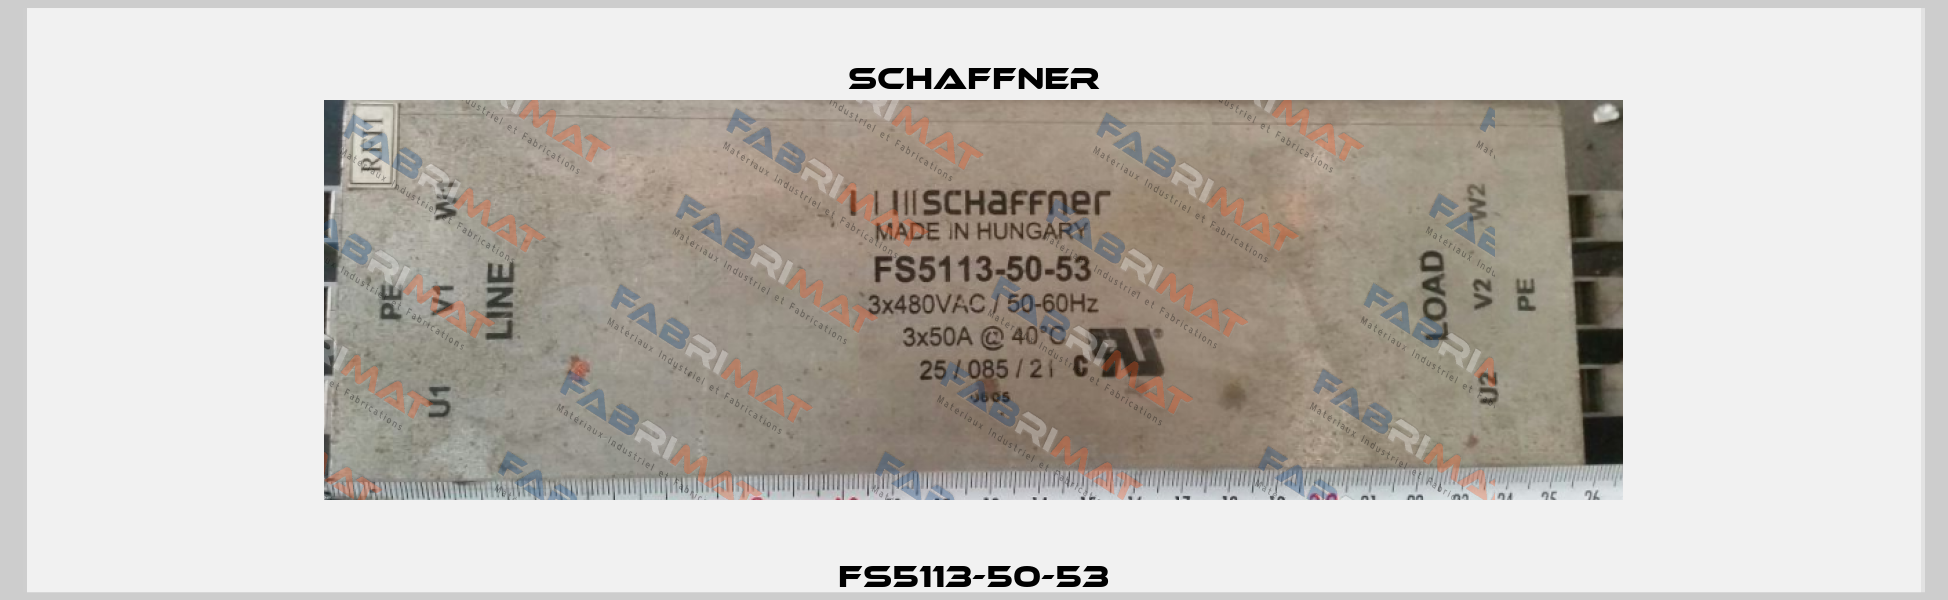 FS5113-50-53 Schaffner